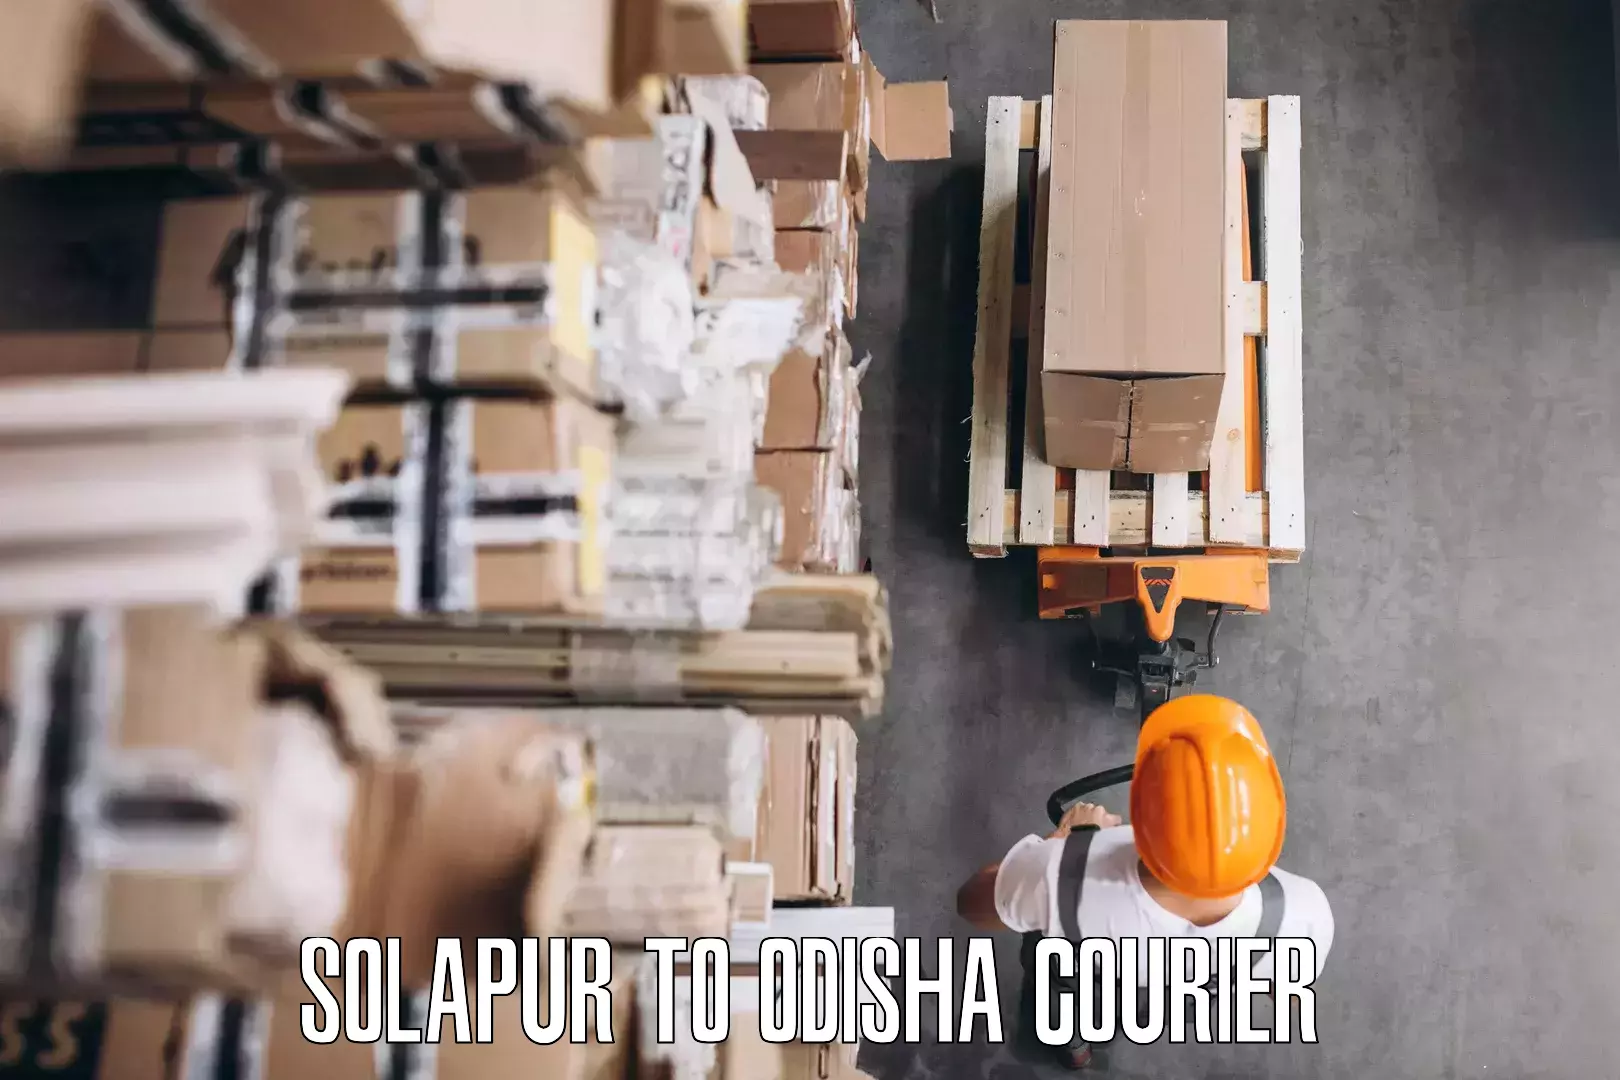 Furniture moving specialists Solapur to Gunupur